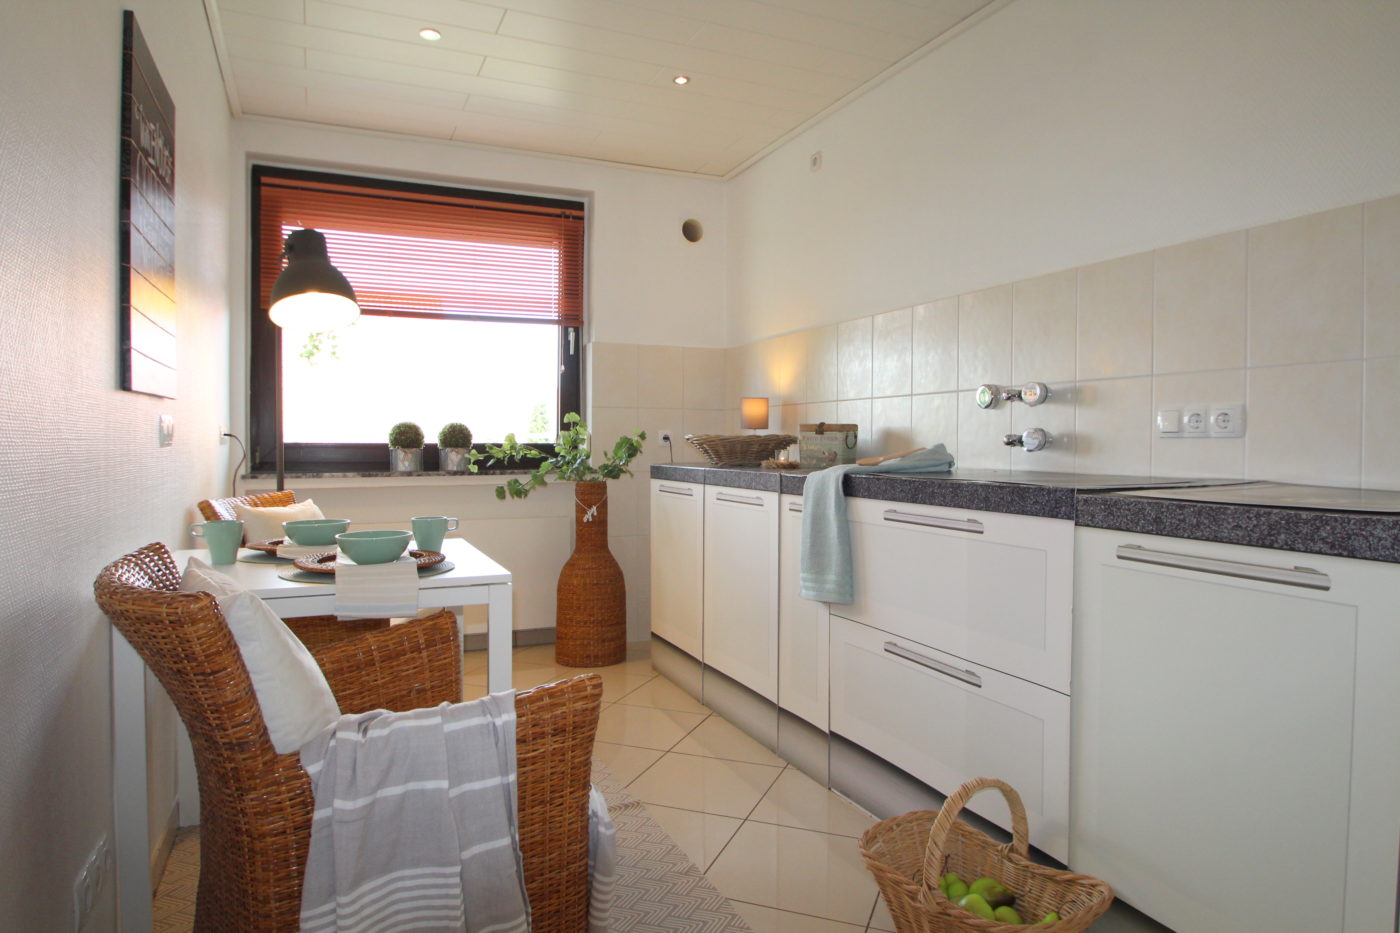 Küche nach dem Homestaging durch Nicole Biernath von Blickfang Homestaging in Soest